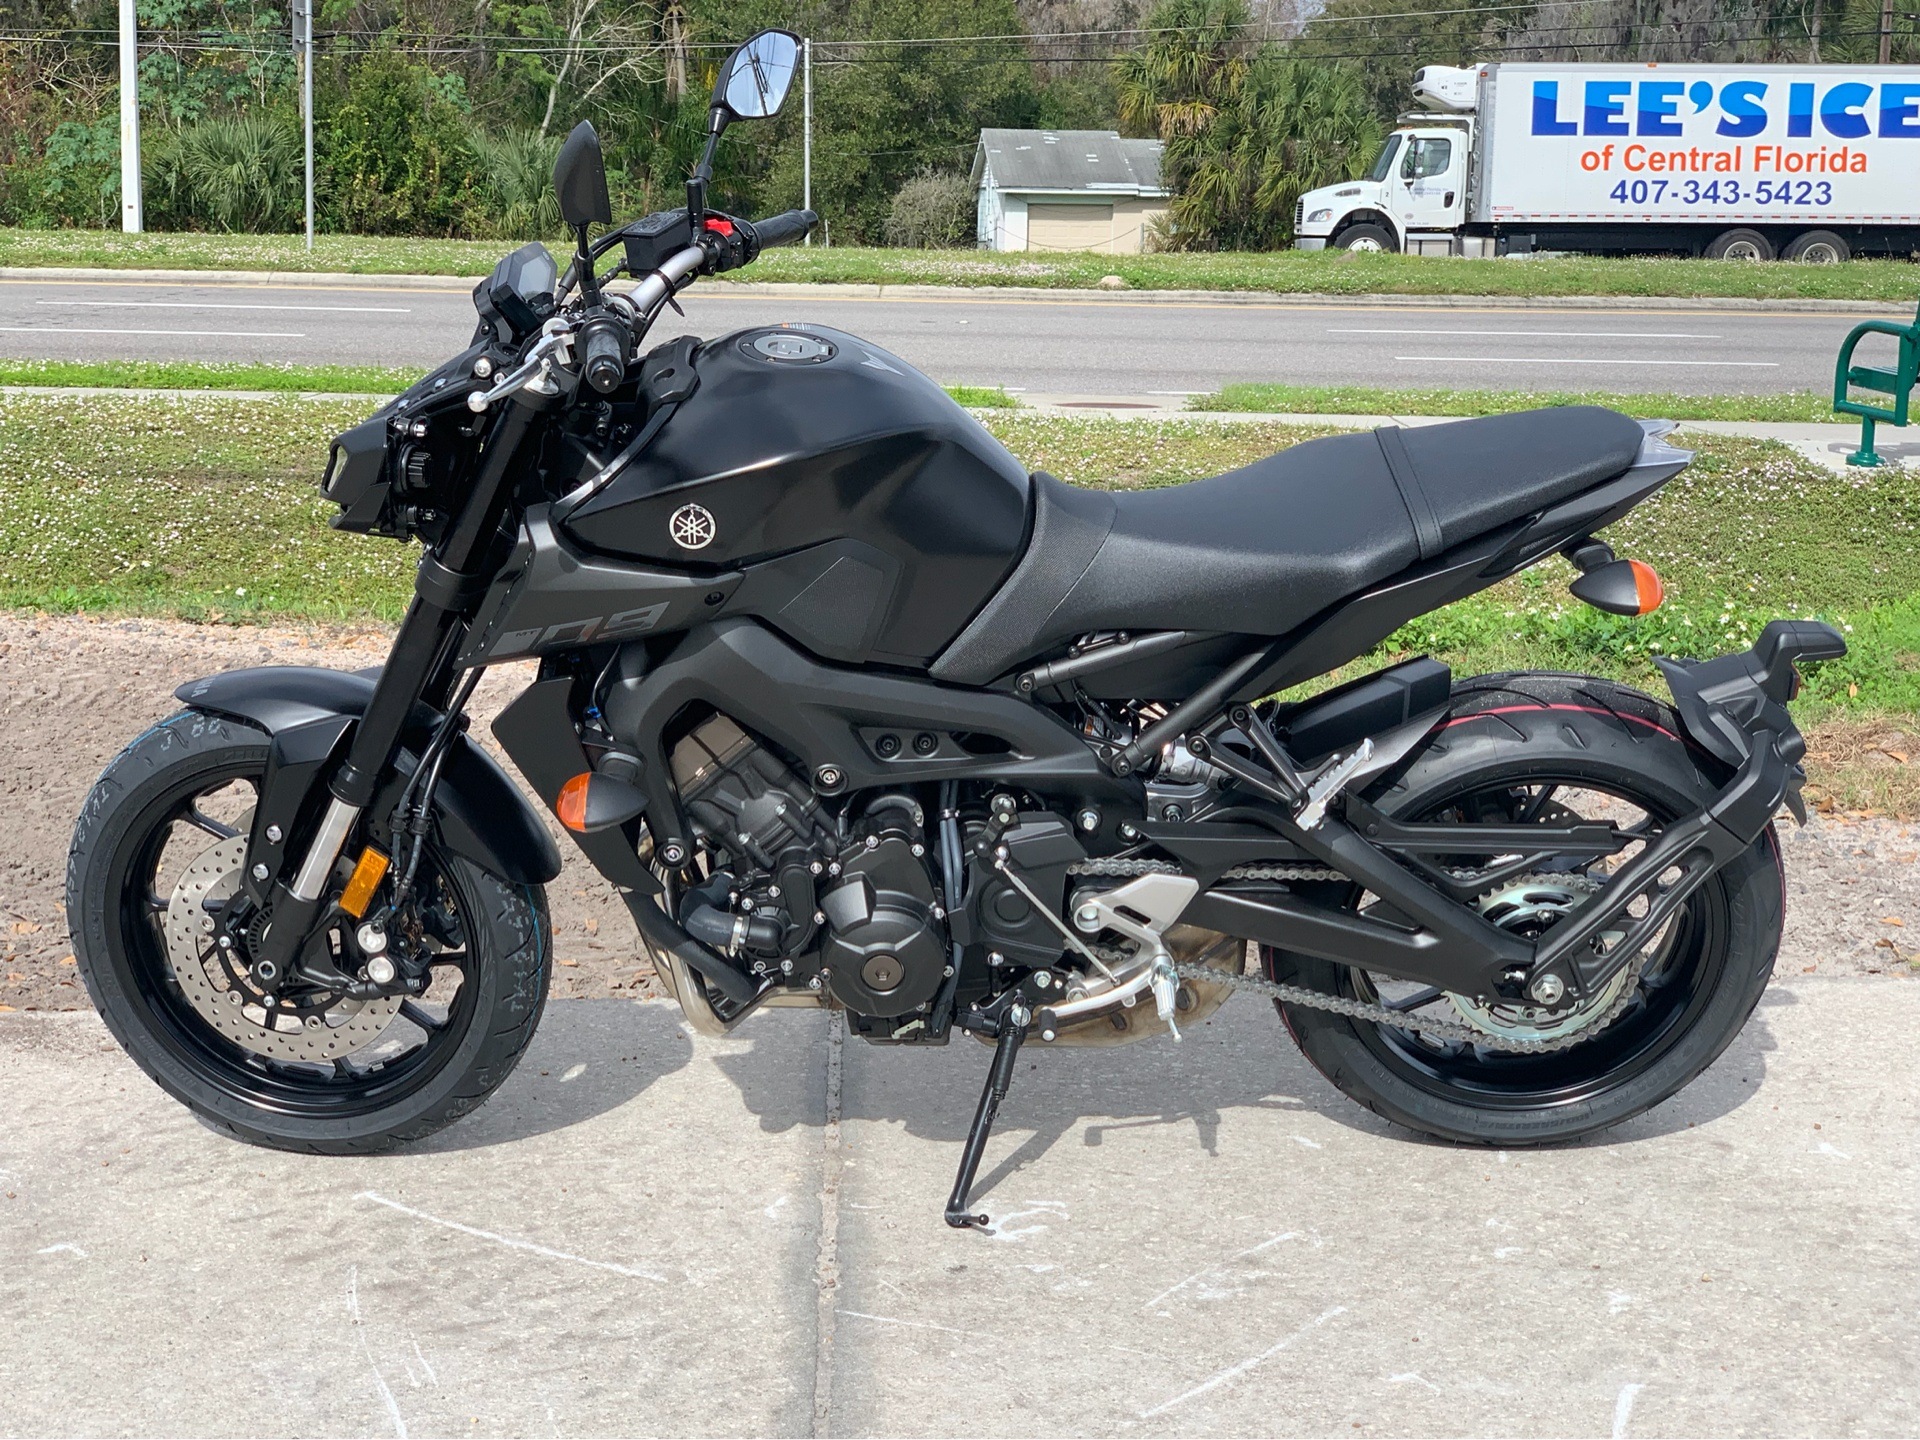 2020 Yamaha Mt 09 Motorcycles Orlando Florida Y2020mt09bl